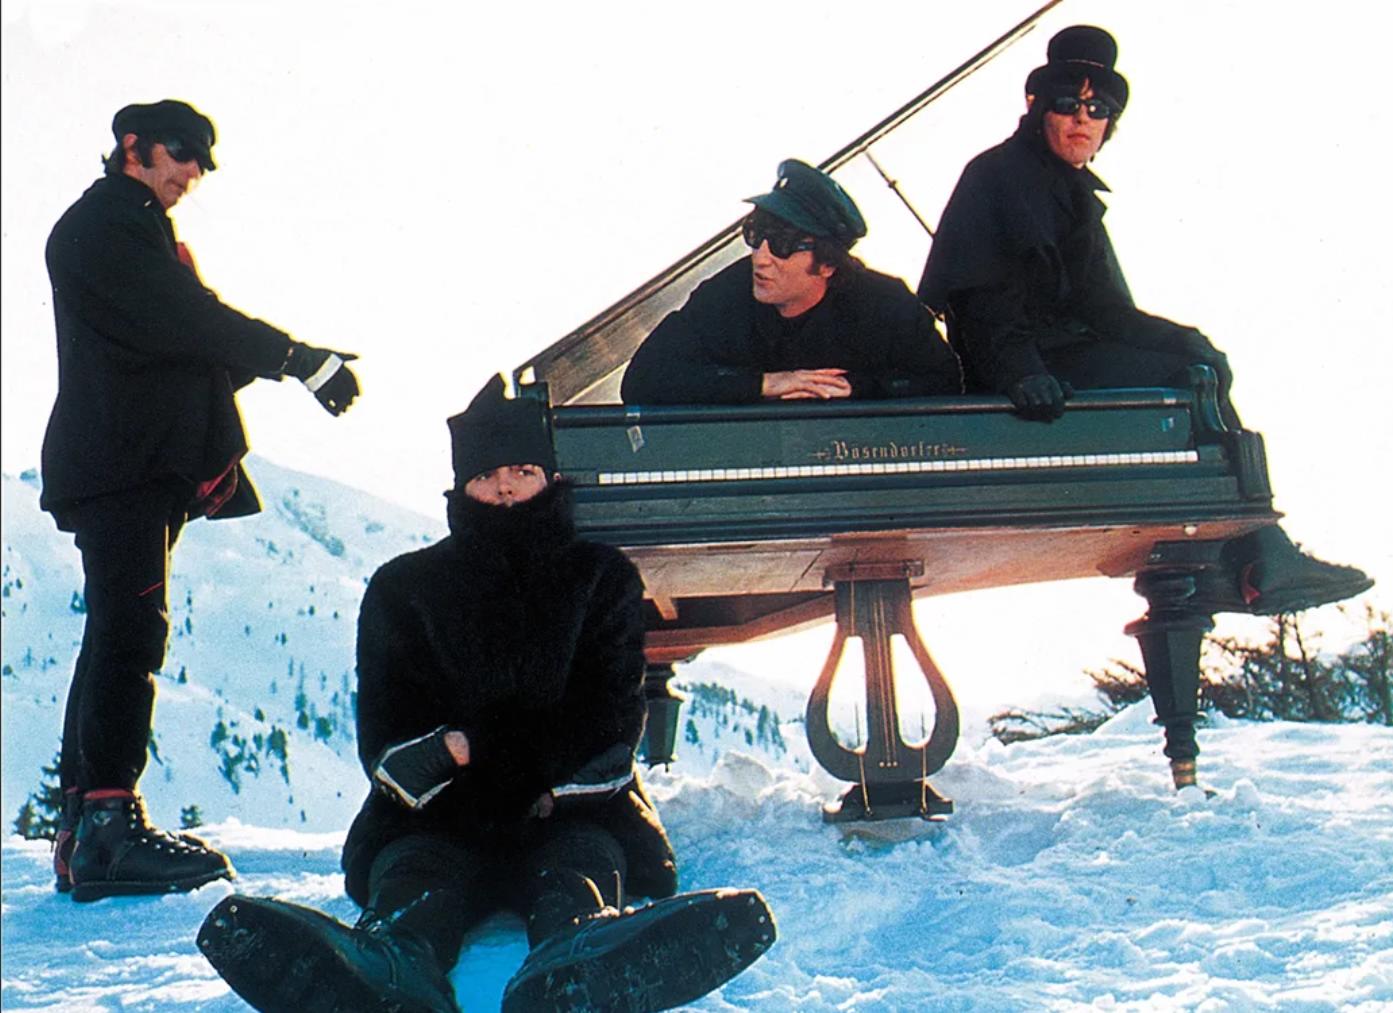 Назван любимый горнолыжный курорт группы The Beatles, где всегда гарантируют хороший снег